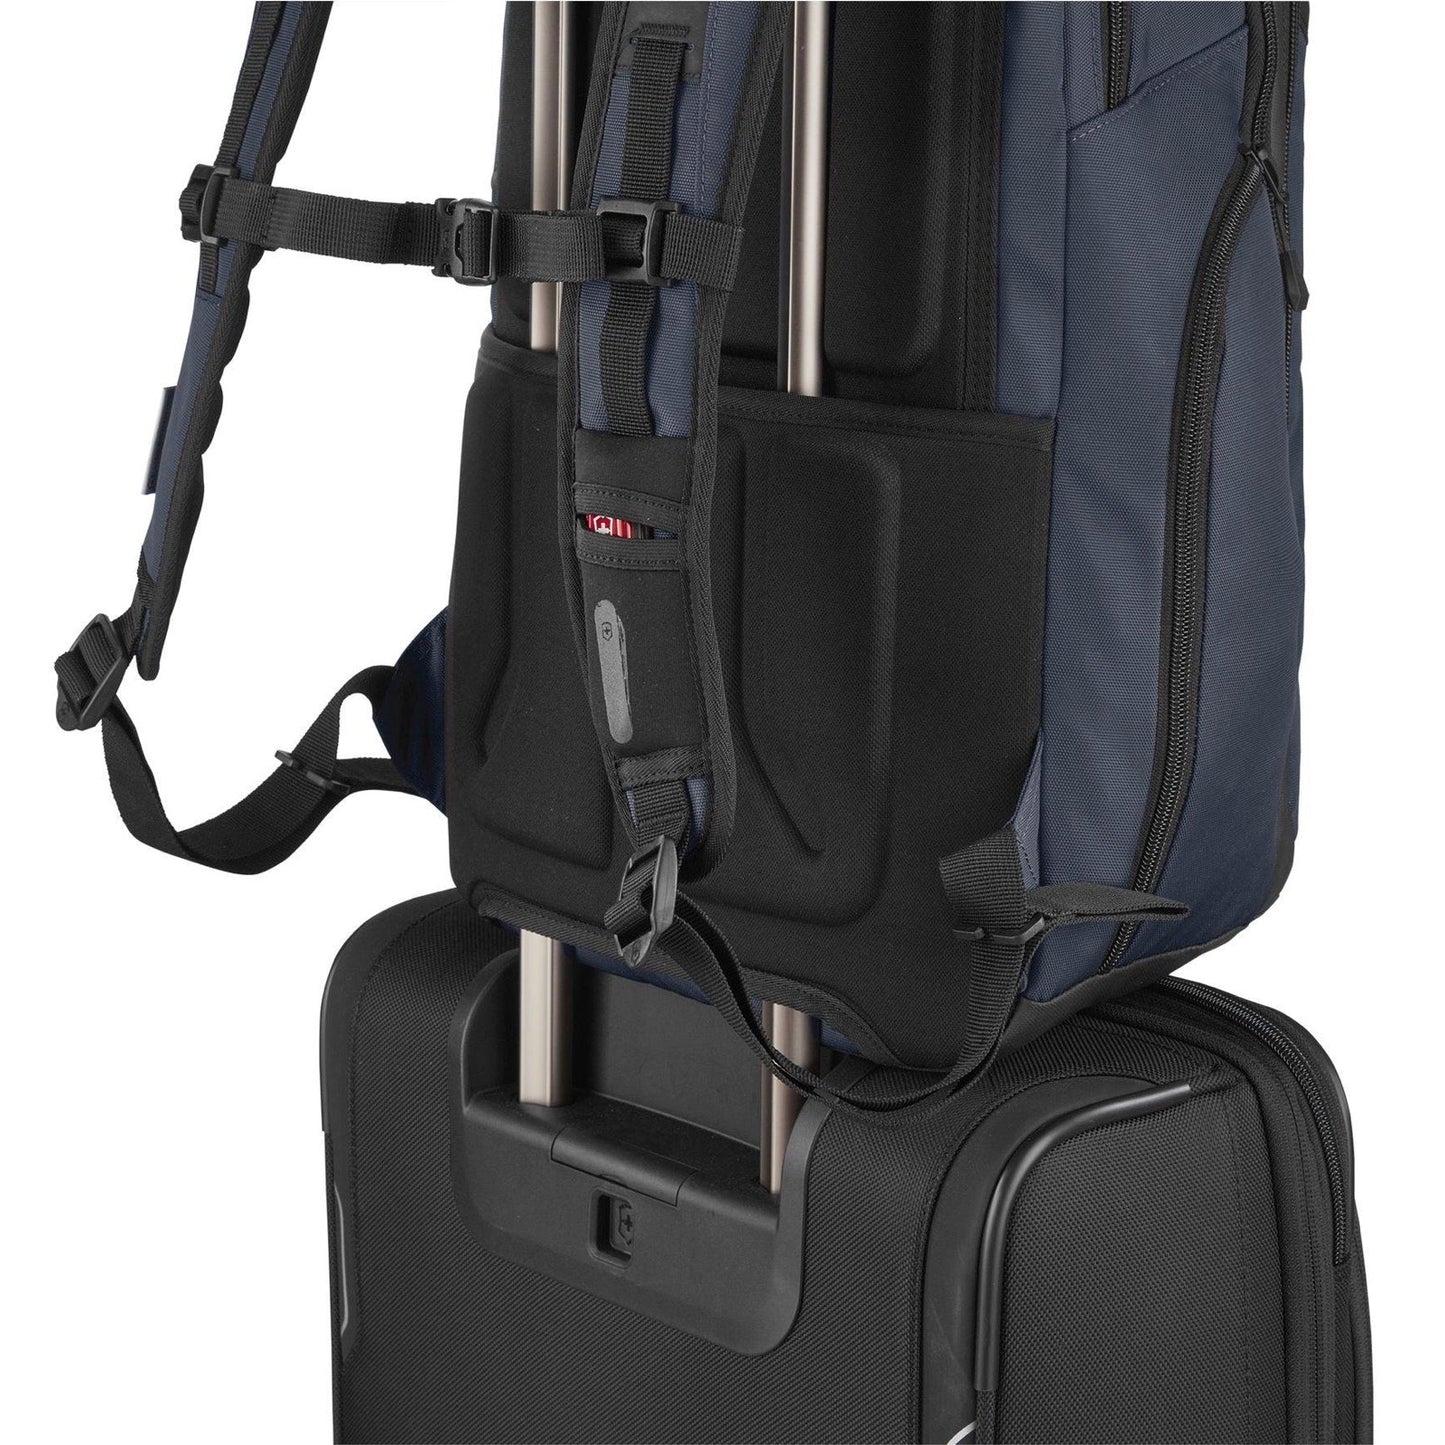 Victorinox Altmont Original Vertical-Zip Laptop Backpack (606731)